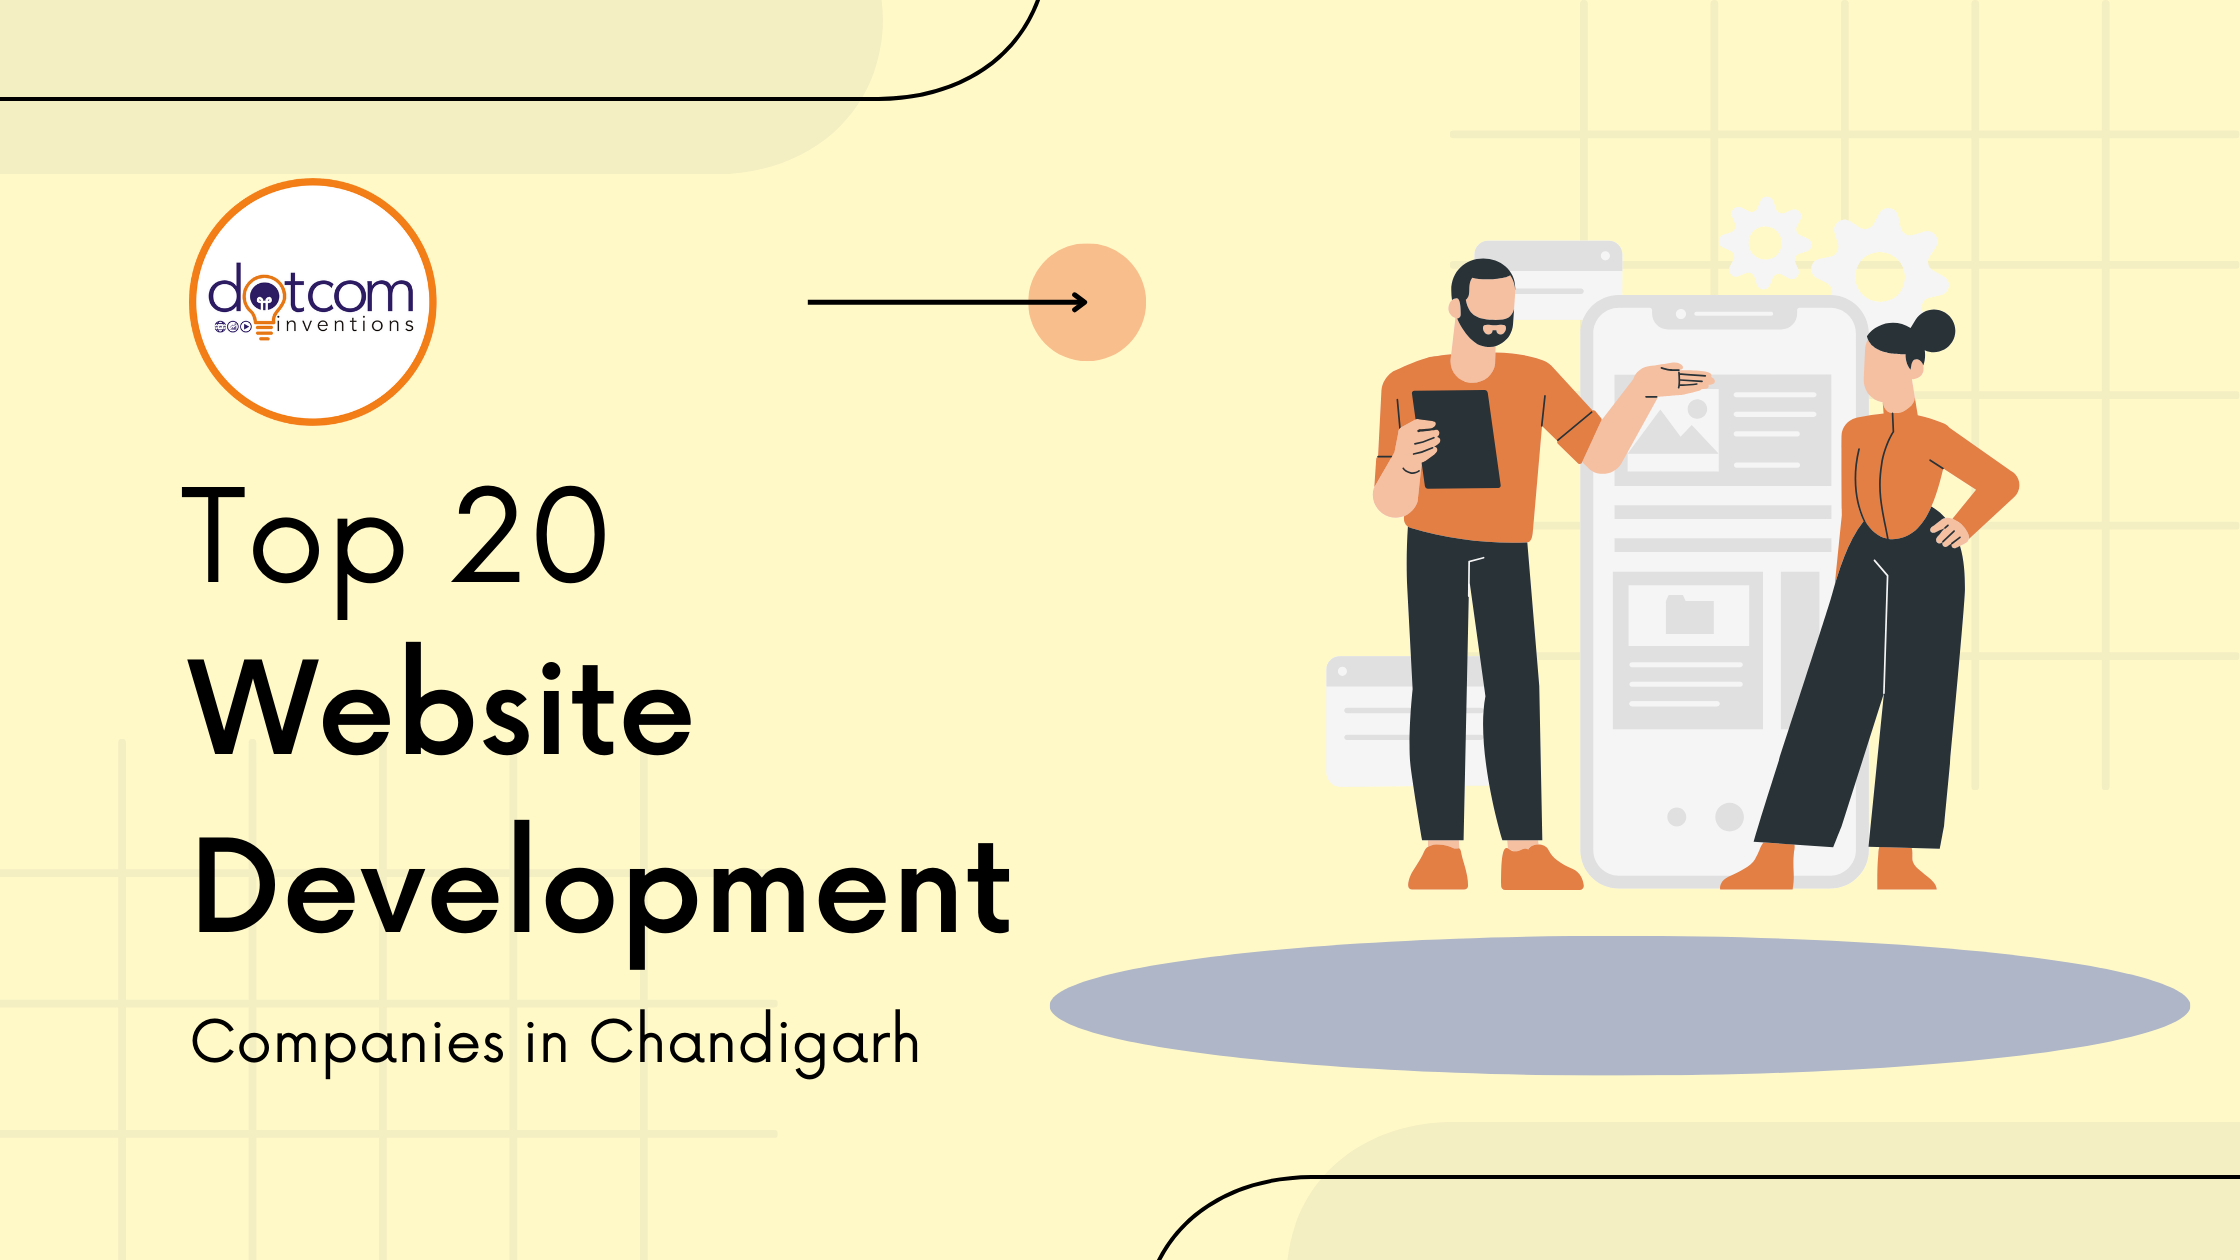 Top 20 website development companies in chandigarh